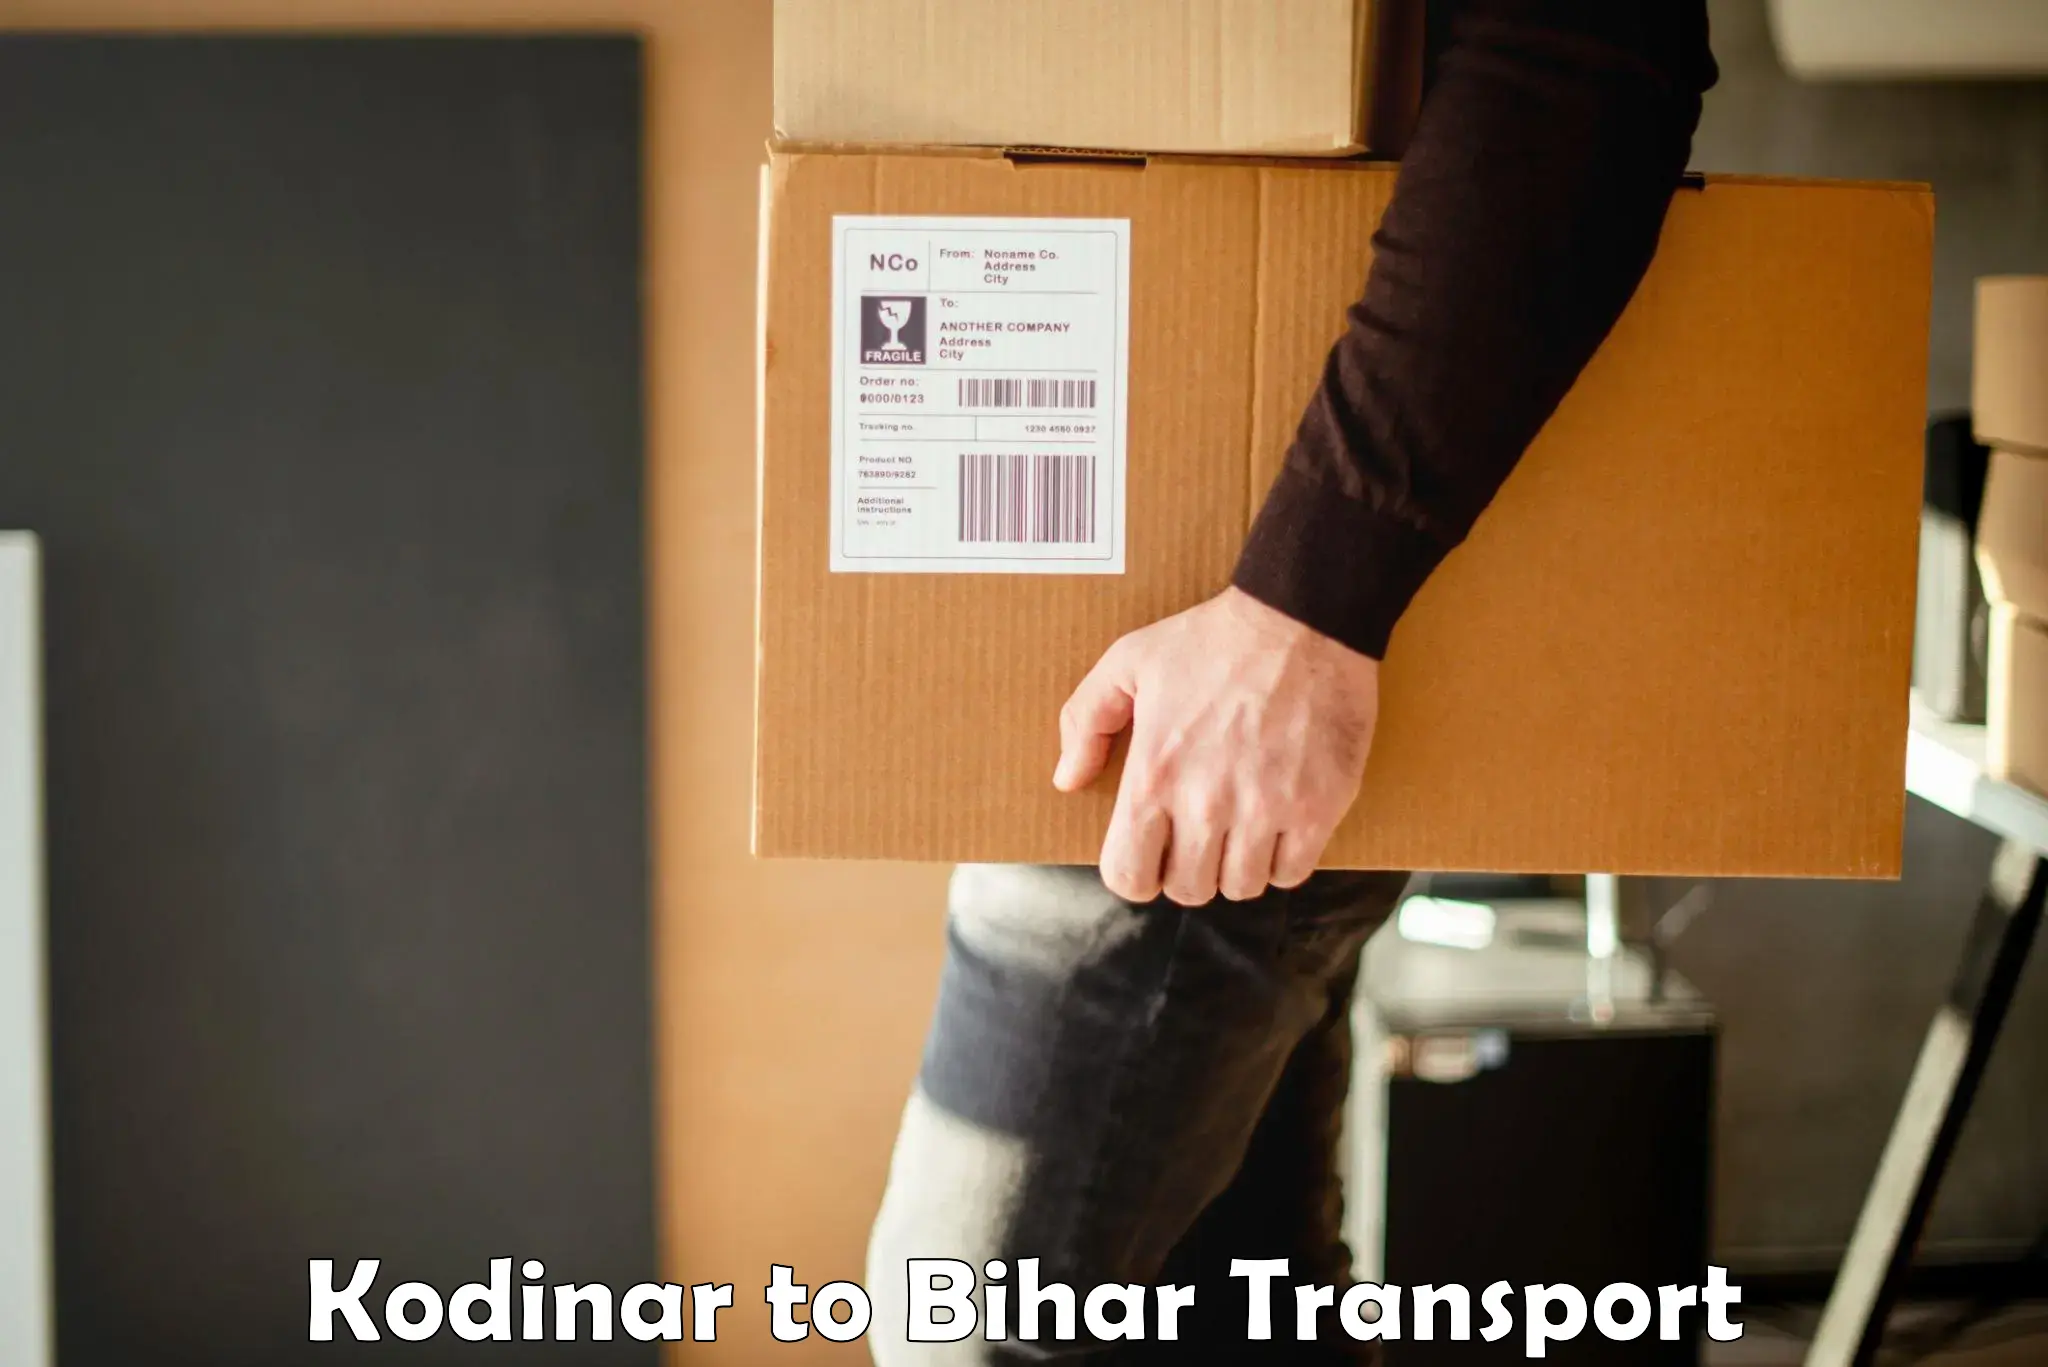 Nearest transport service Kodinar to Malmaliya